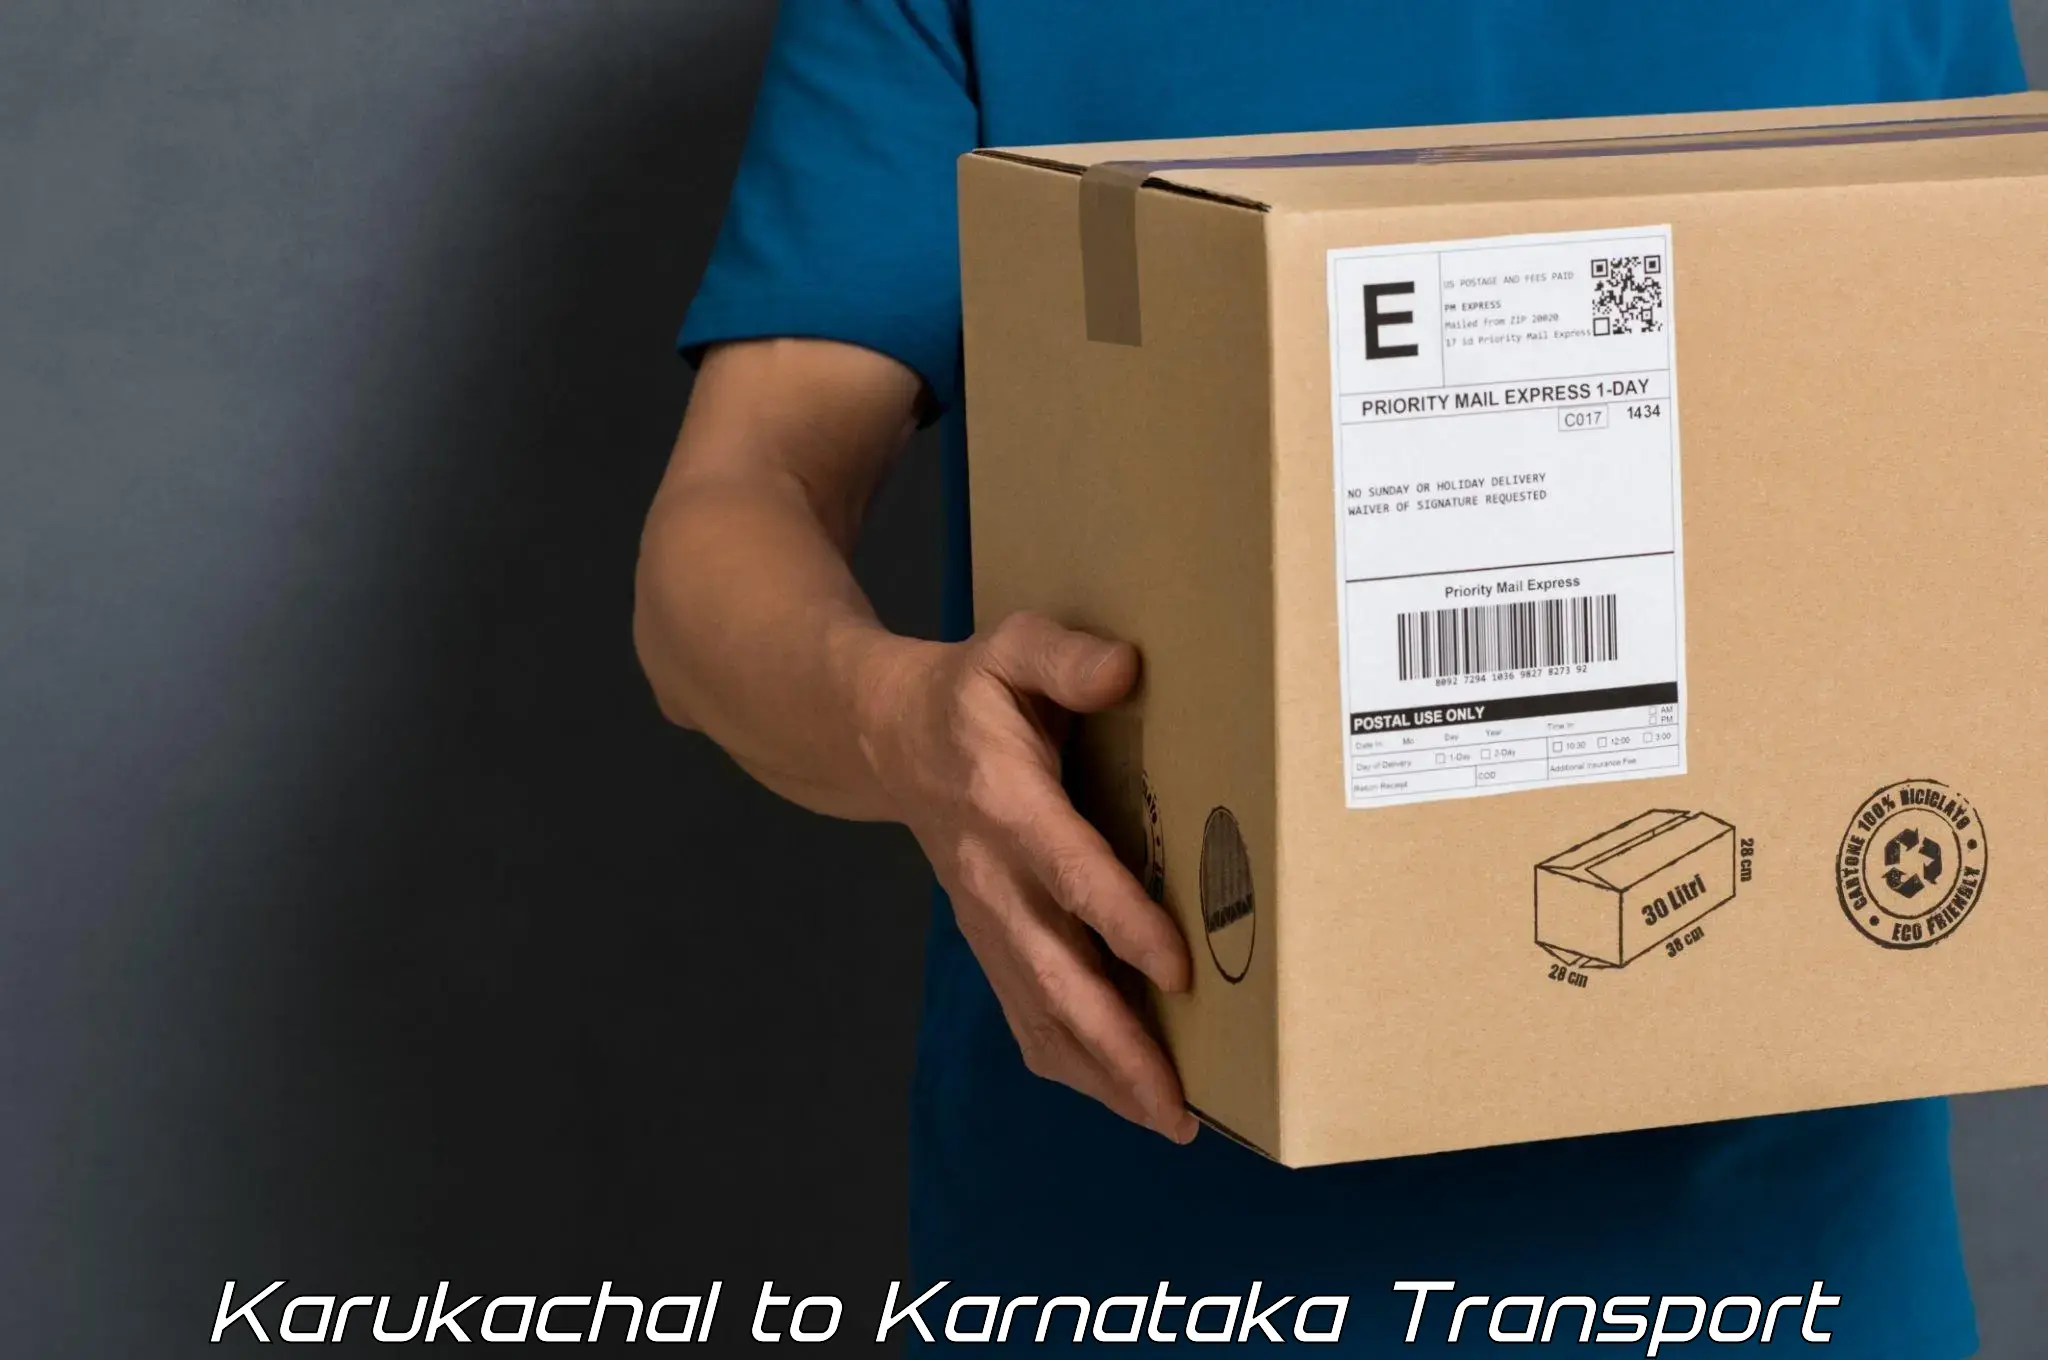 Truck transport companies in India Karukachal to Karnataka